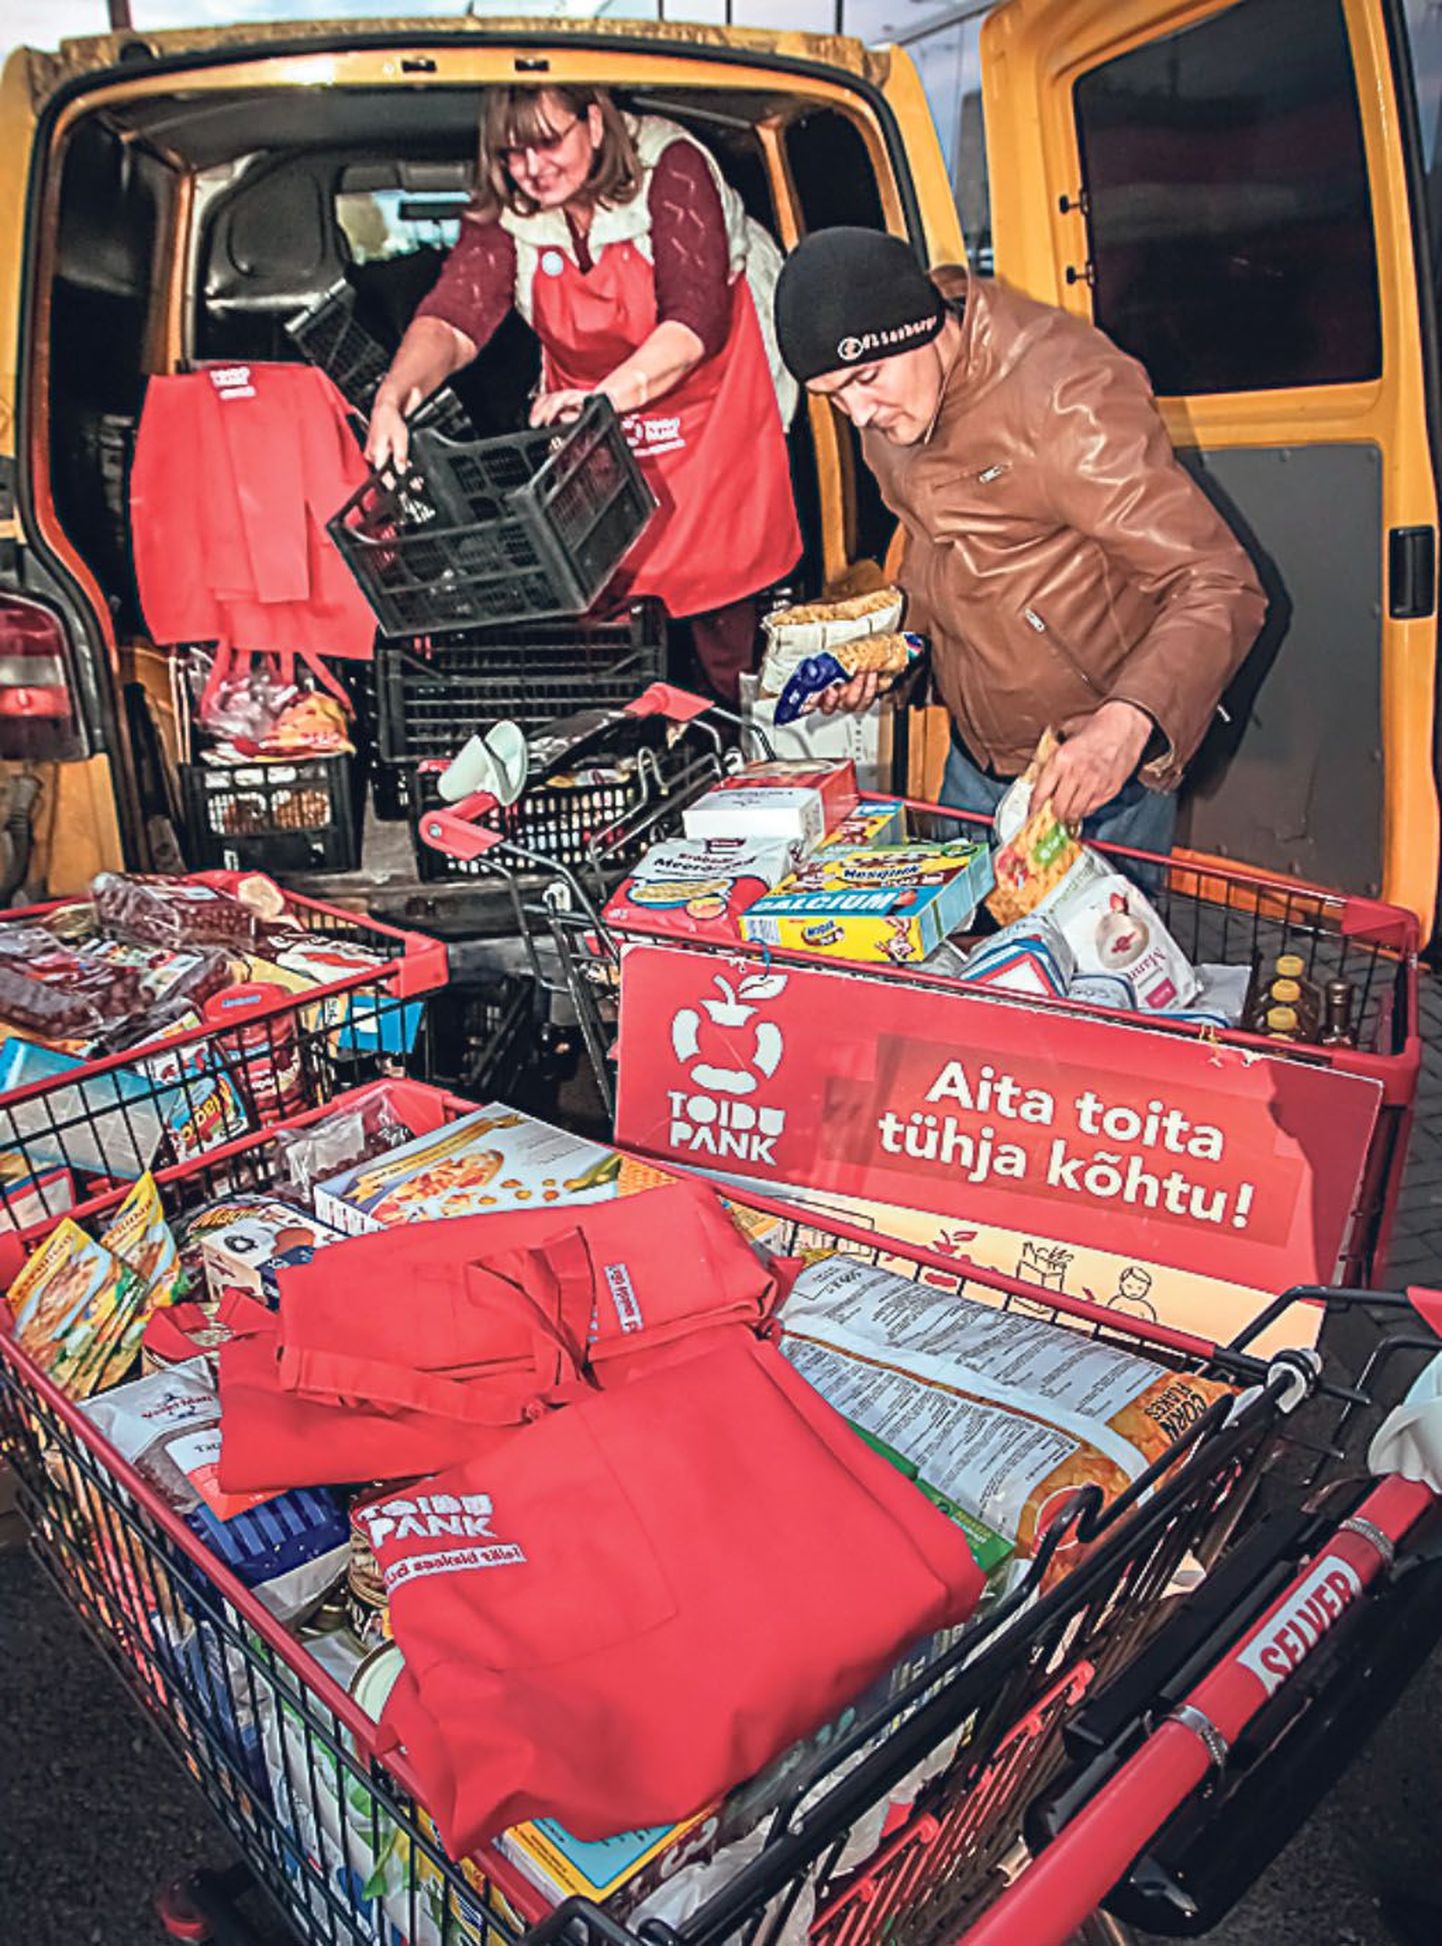 Oktoobris toimunud üle-eestilistel toidukogumispäevadel annetati Pärnu toidupangale 2753 ühikut toiduabi, mis oli Pärnu kampaaniate rekord.